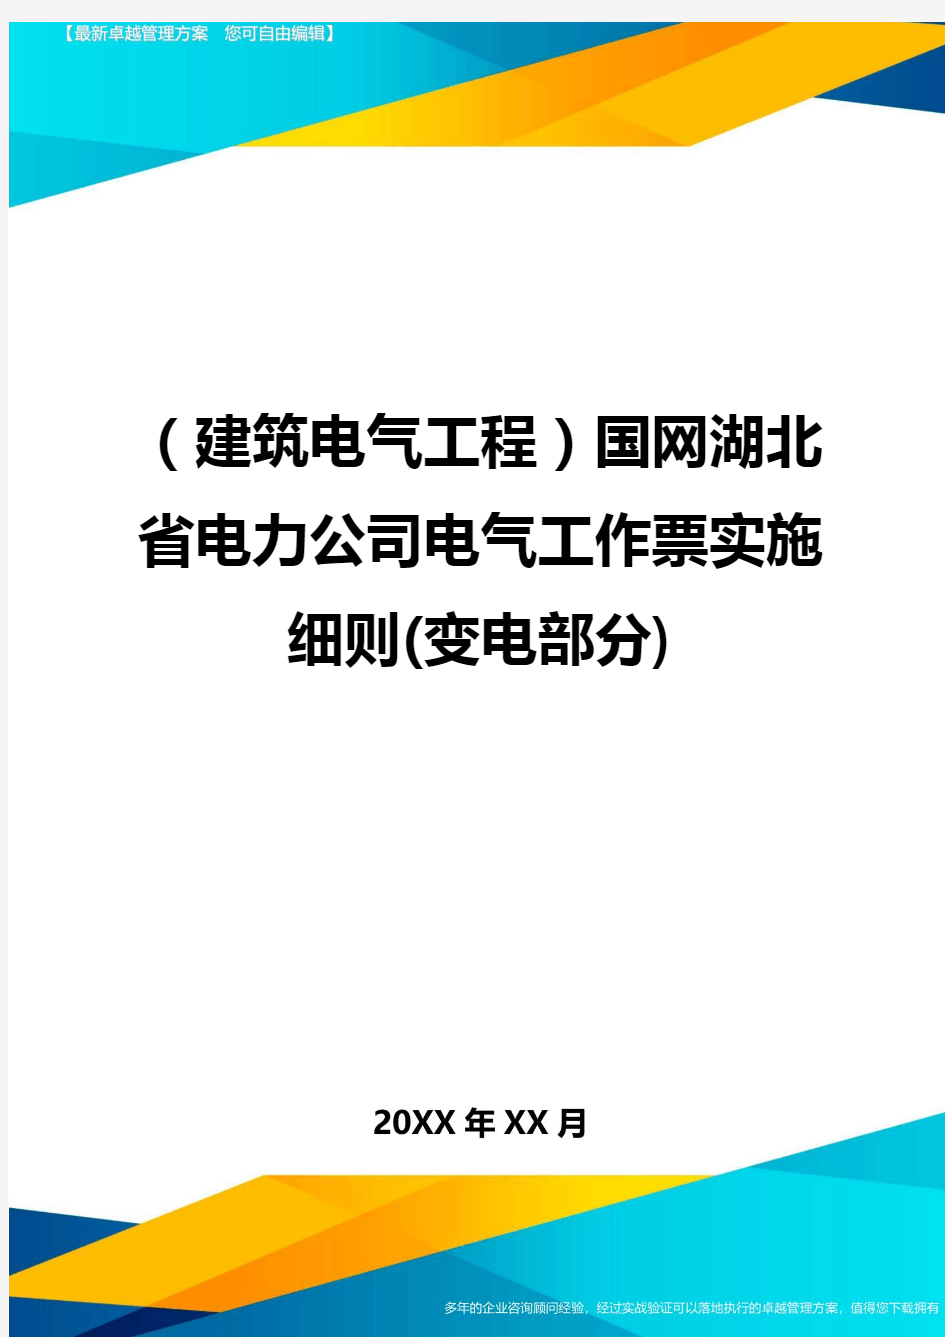 (建筑电气工程)国网湖北省电力公司电气工作票实施细则(变电部分)